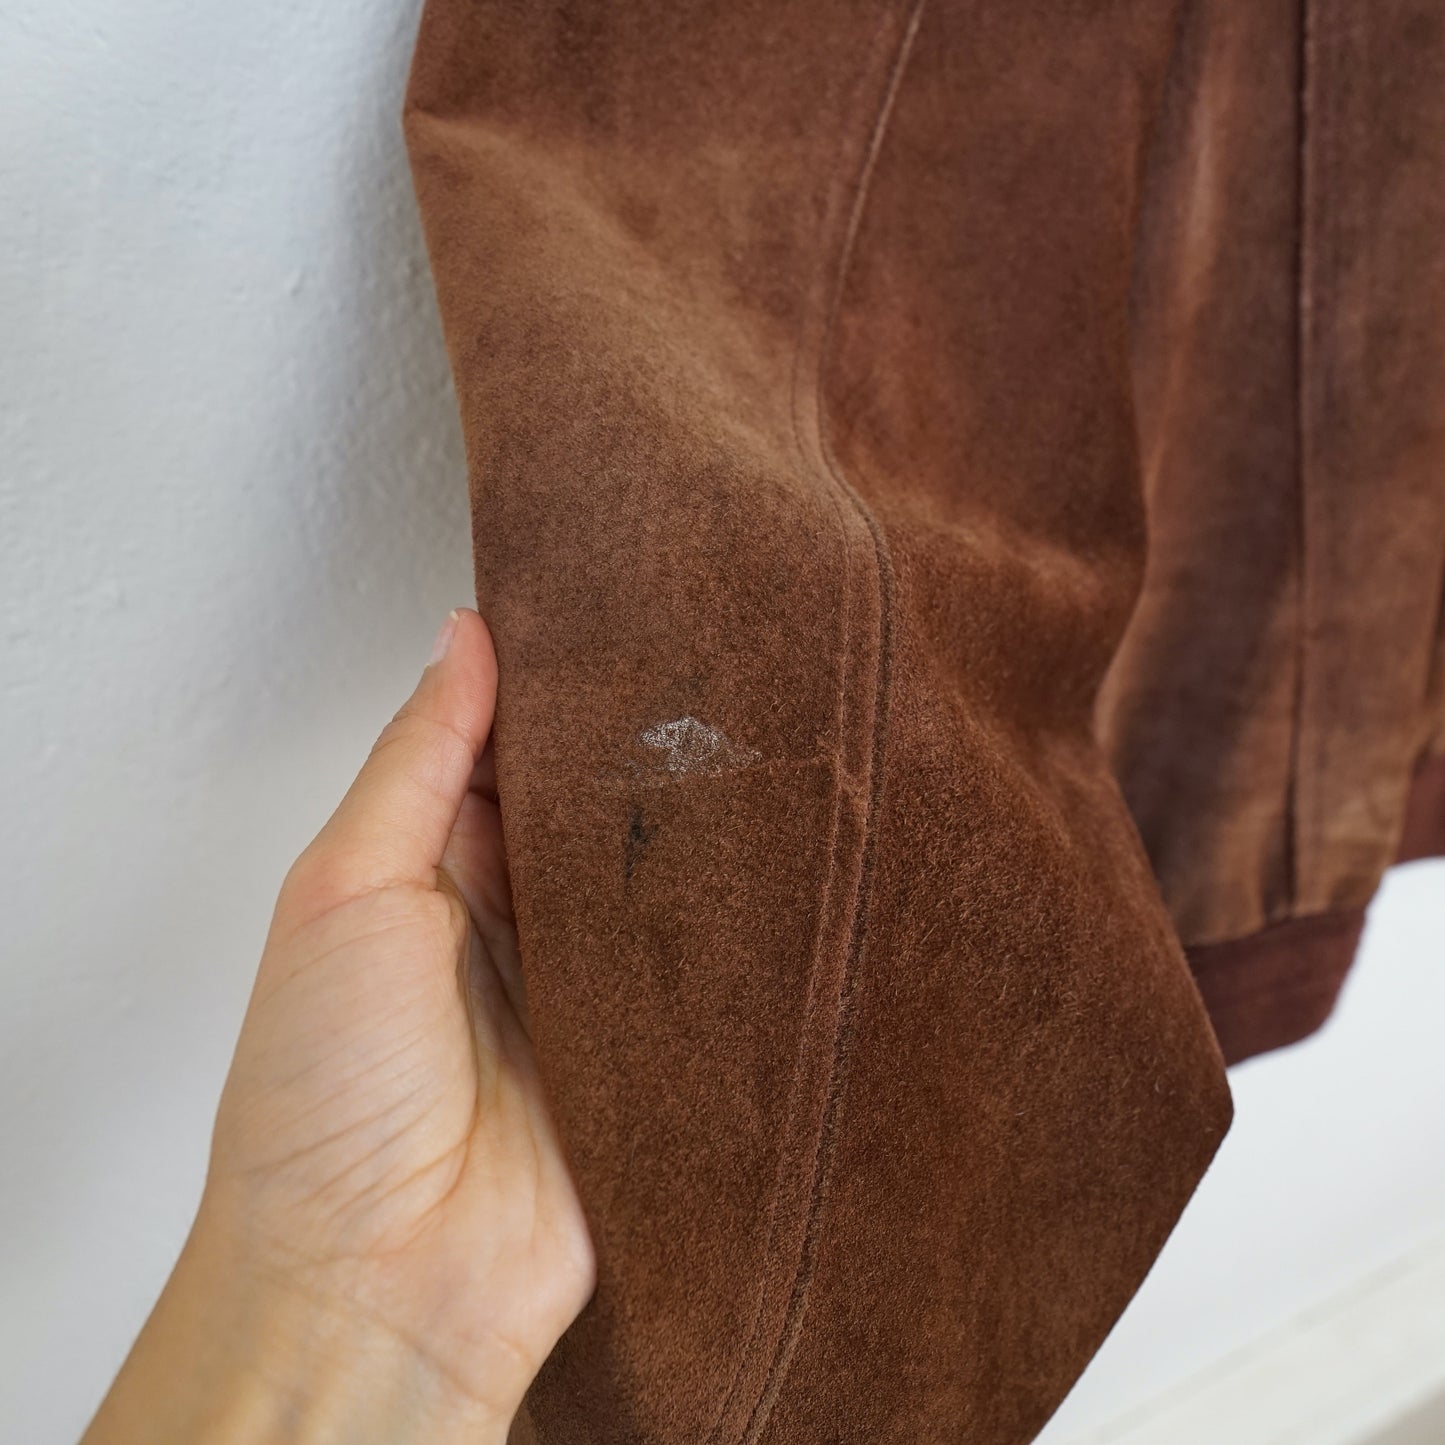 Vintage brown Suede Jacket Men Size L